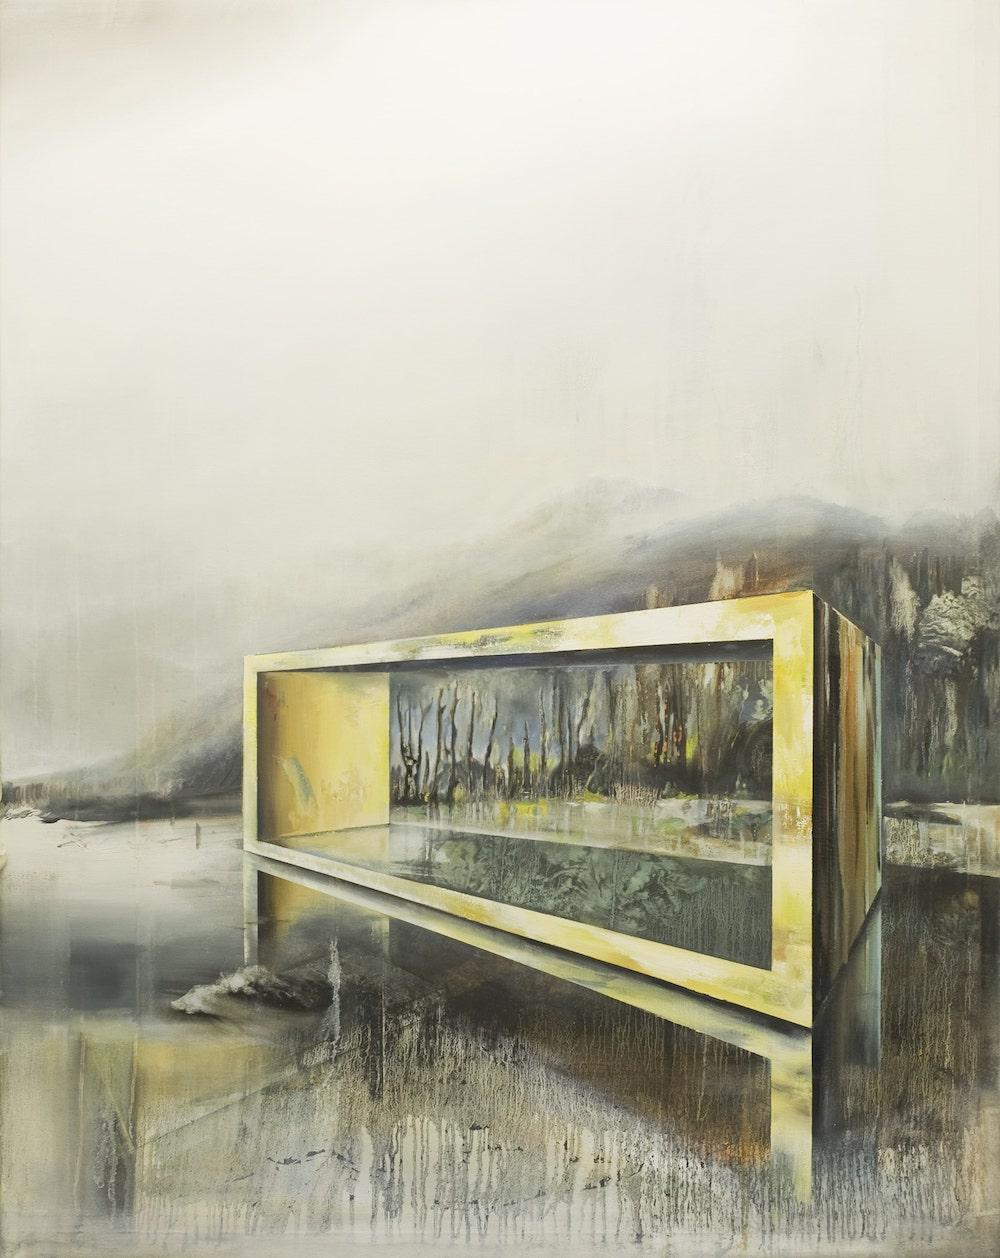 Wandelsgrund es una pintura única al óleo sobre lienzo del artista contemporáneo Emanuel Schulze, de dimensiones 140 × 110 cm.
La obra está firmada, se vende sin enmarcar e incluye un certificado de autenticidad.

Esta obra de arte representa un